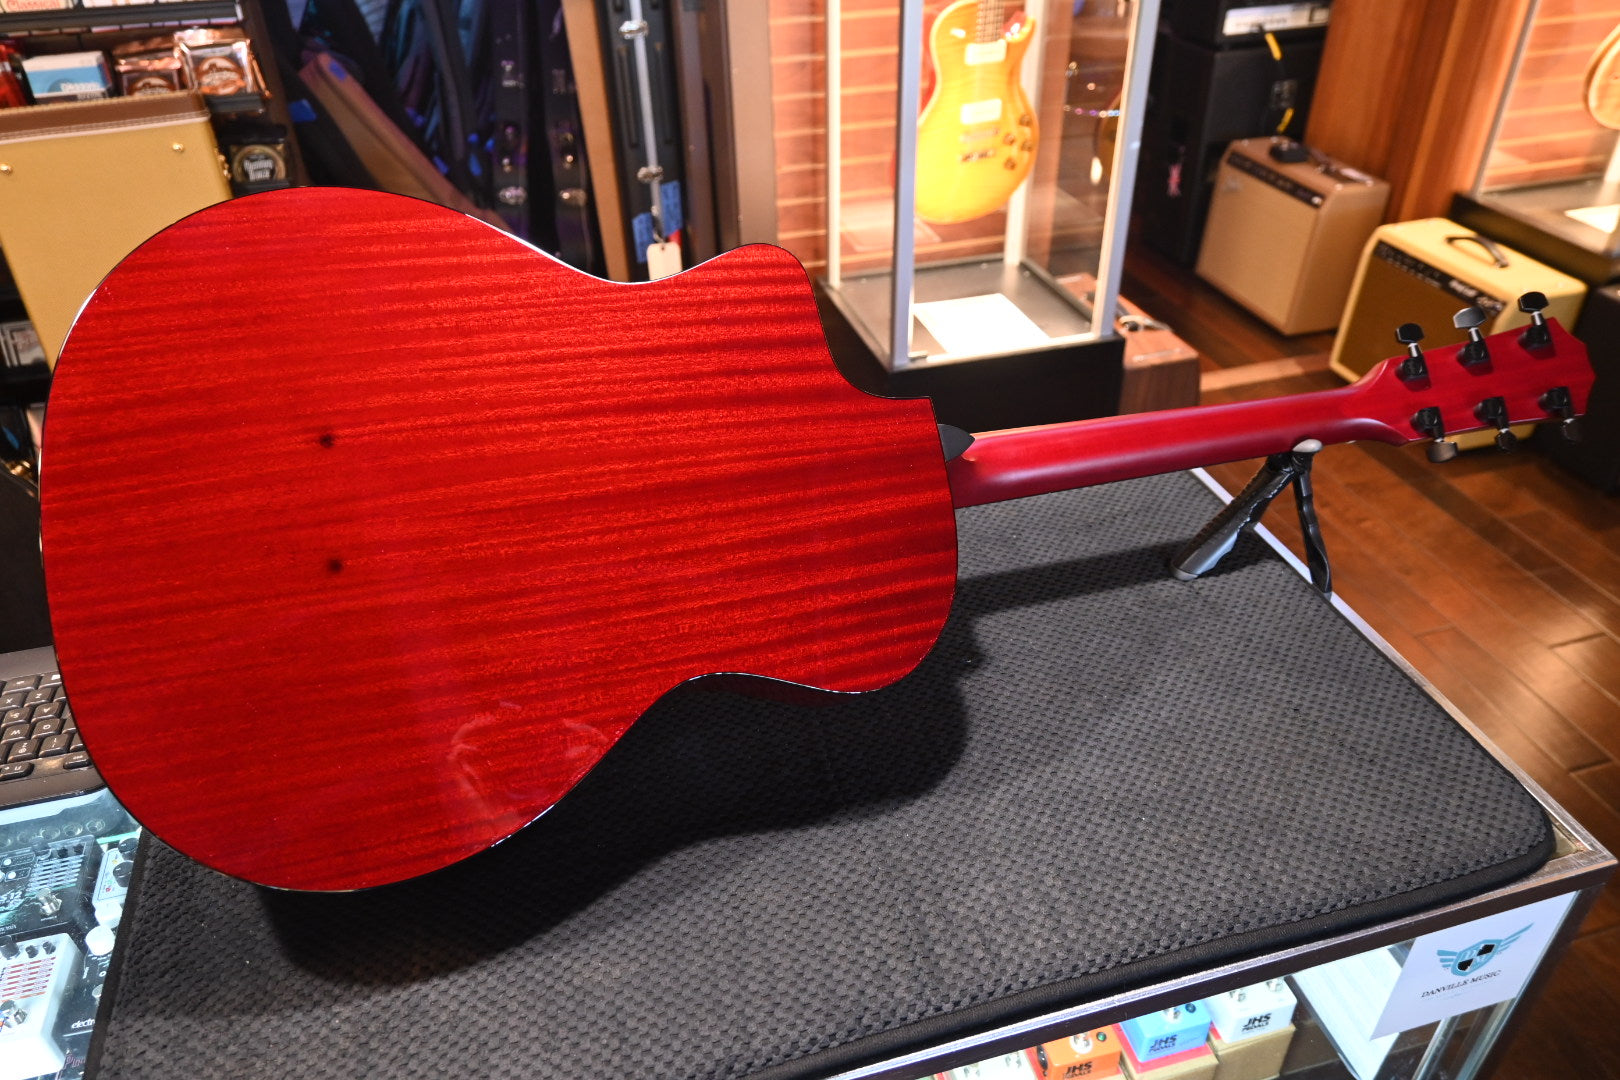 Taylor 224ce DLX LTD - Trans Red Guitar #3285 - Danville Music